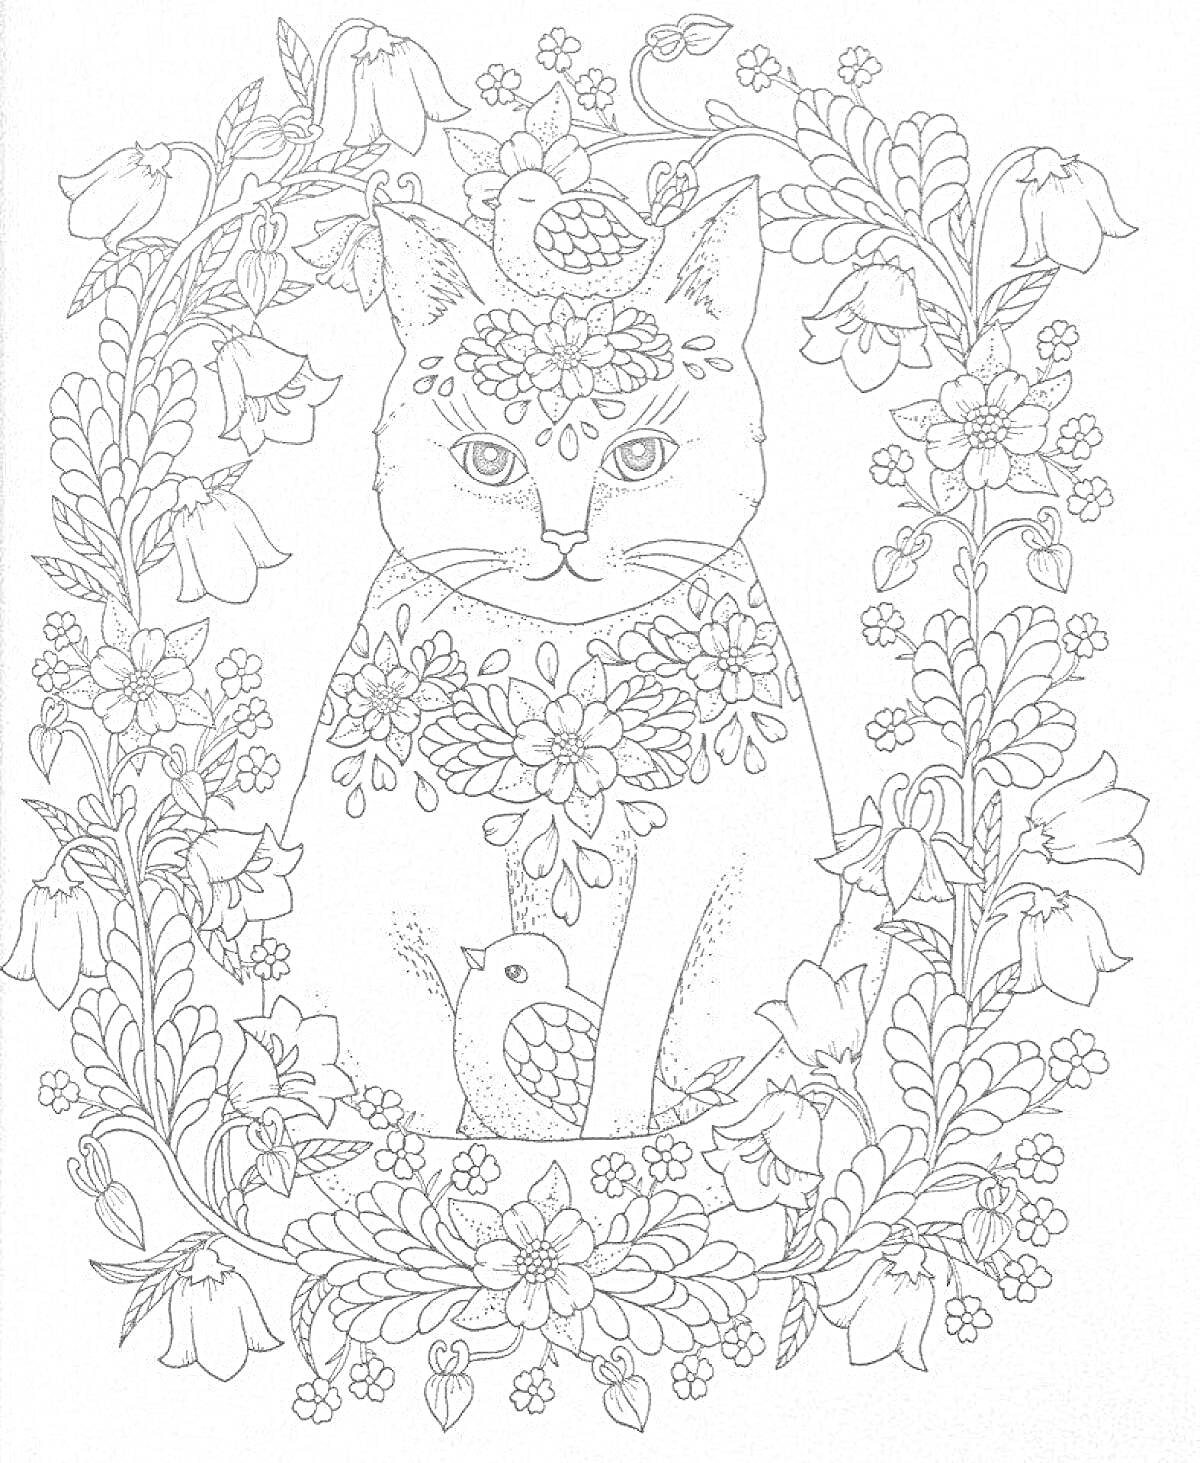 Раскраска Кошка среди цветочных узоров и птиц. Кошка украшена цветами, украшенный цветами кот сидит среди крупных цветов и листвы, сверху, по бокам и снизу находятся мелкие птицы и деревья.